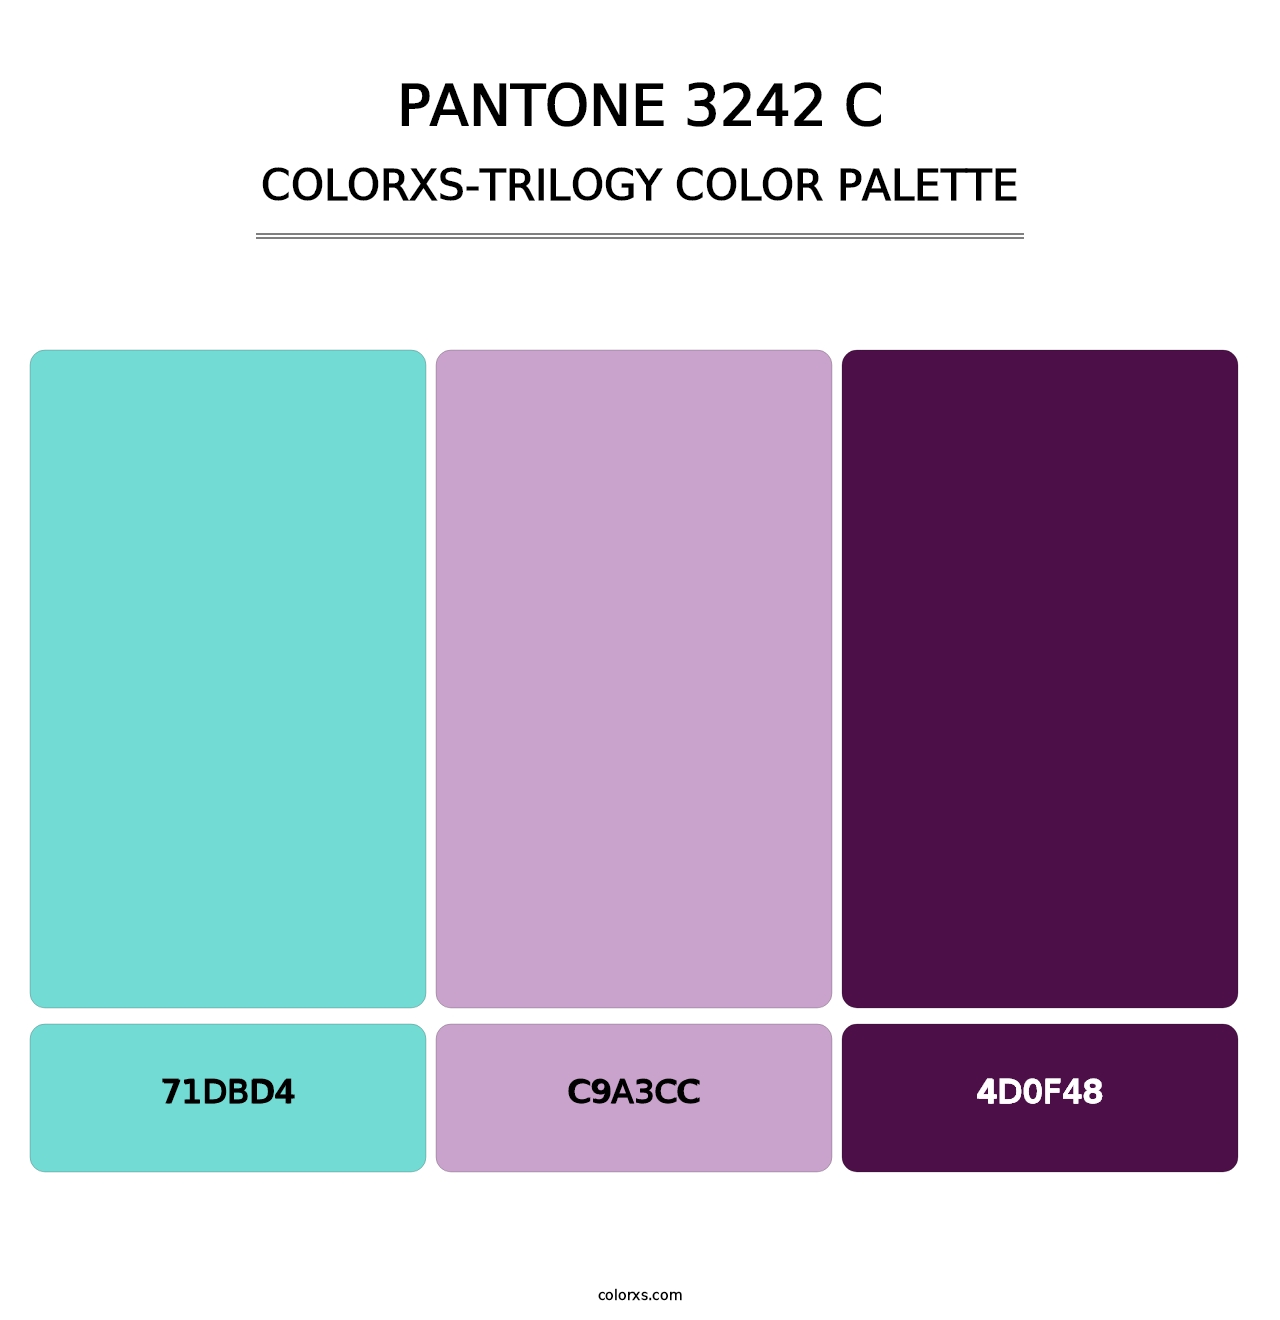 PANTONE 3242 C - Colorxs Trilogy Palette